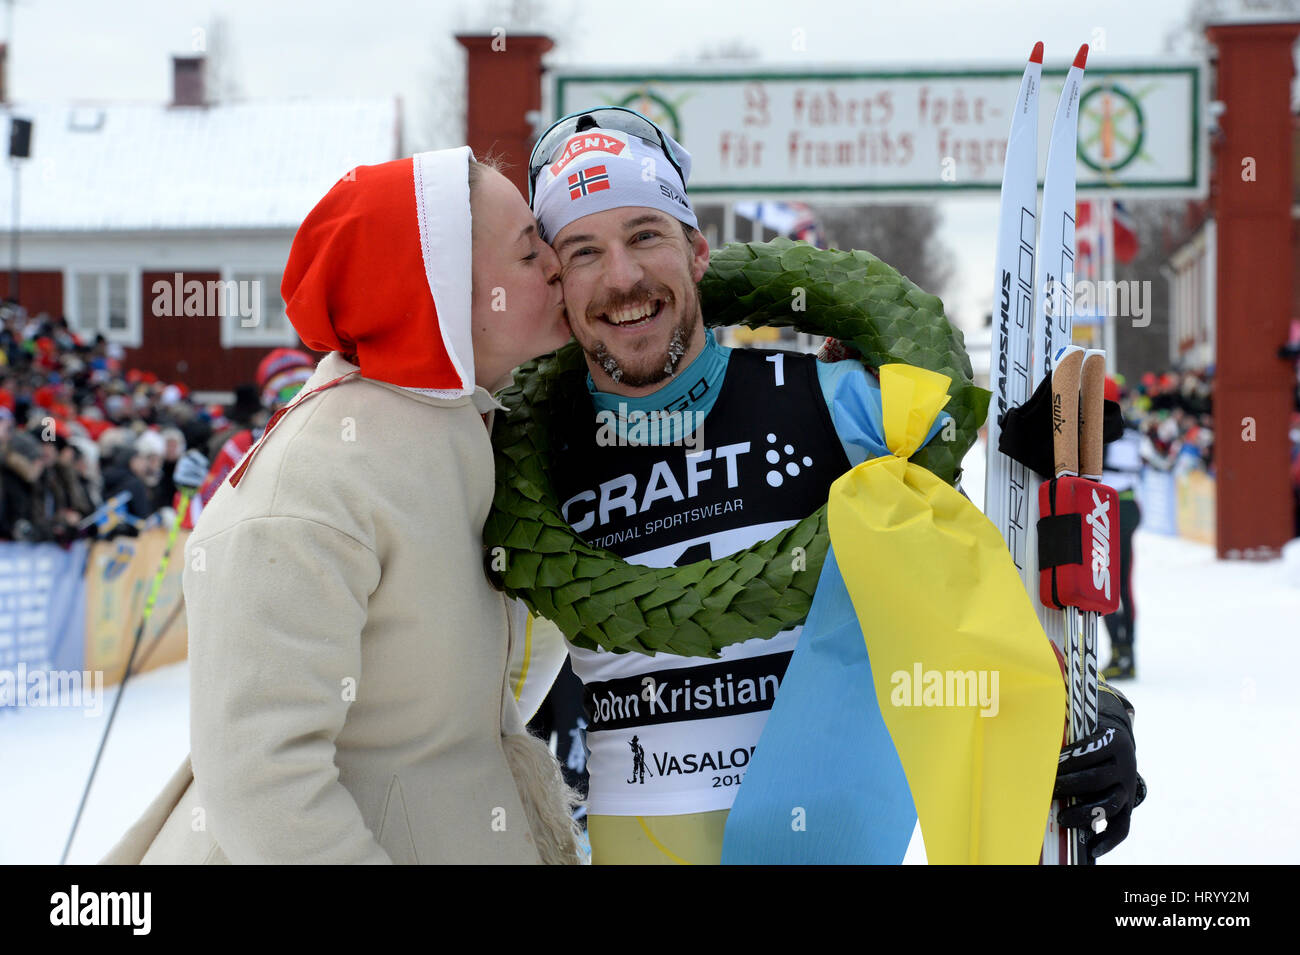 Stoccolma. Mar 5, 2017. Norvegia John Kristian Dahl (R) pone per le foto dopo aver vinto uomini della Vasaloppet cross-country ski champion race nella regione di Dalarna della Svezia centrale, 5 marzo 2017. Credito: Vasaloppet/Xinhua/Alamy Live News Foto Stock